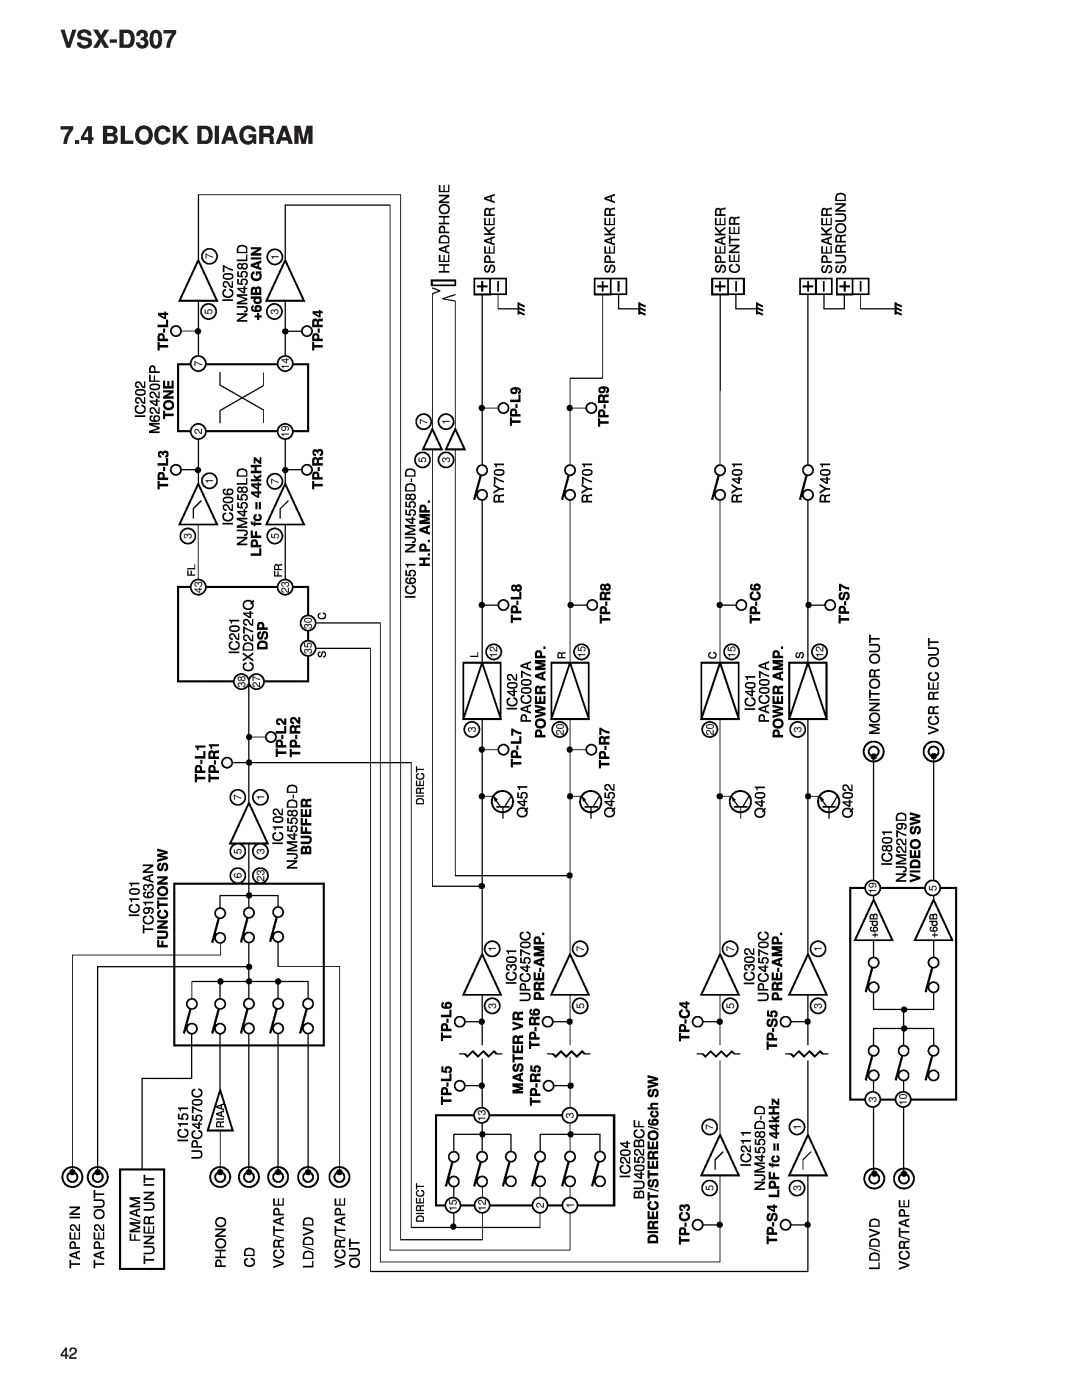 Dolby Laboratories STAV-3770, 31-3043 service manual Diagram, Block, VSX-D307 